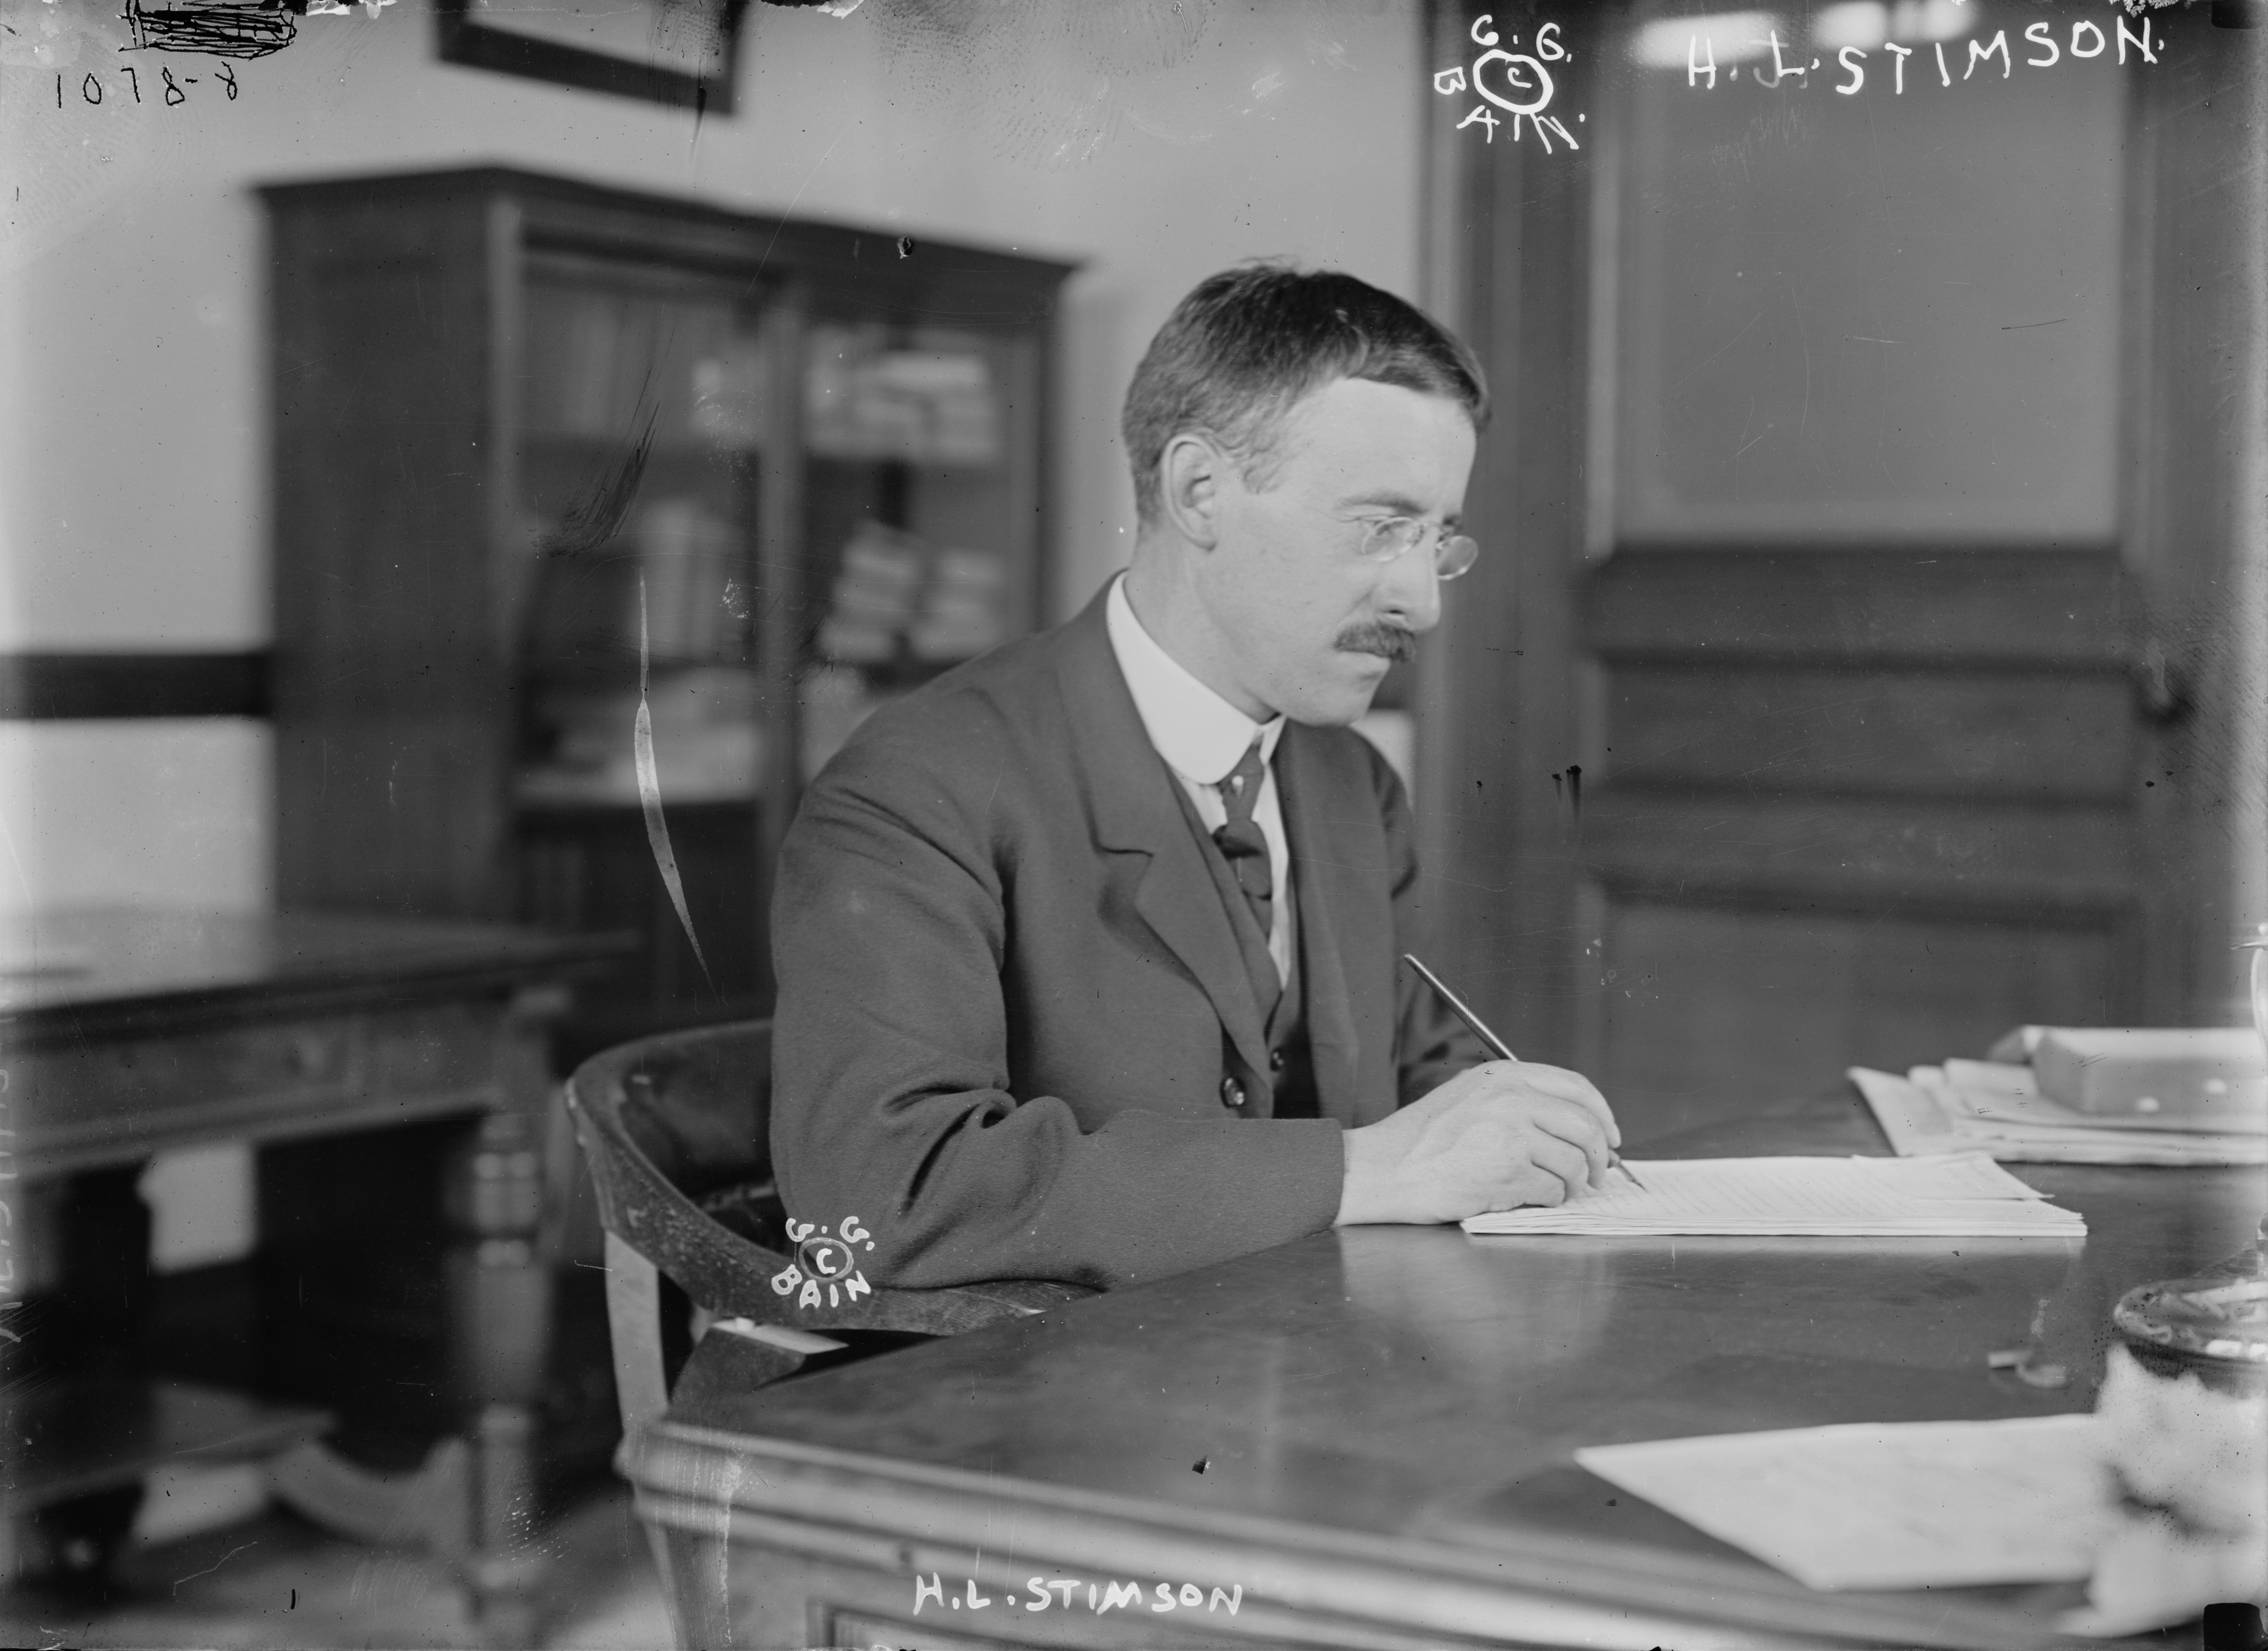 Henry Stimson at a desk, 1910